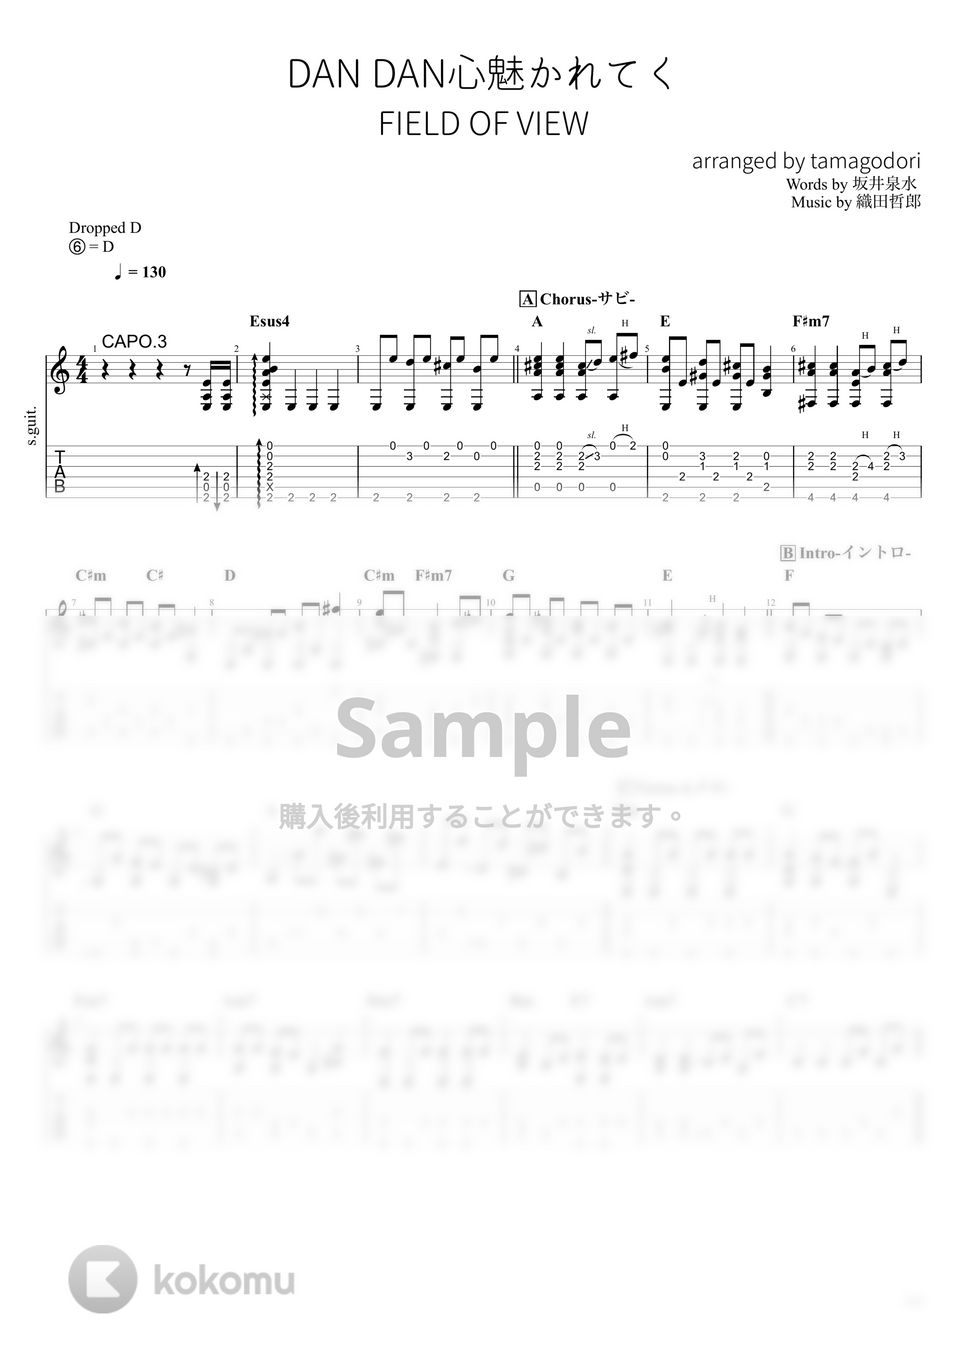 FIELD OF VIEW - DANDAN心魅かれてく (ソロギター) by たまごどり